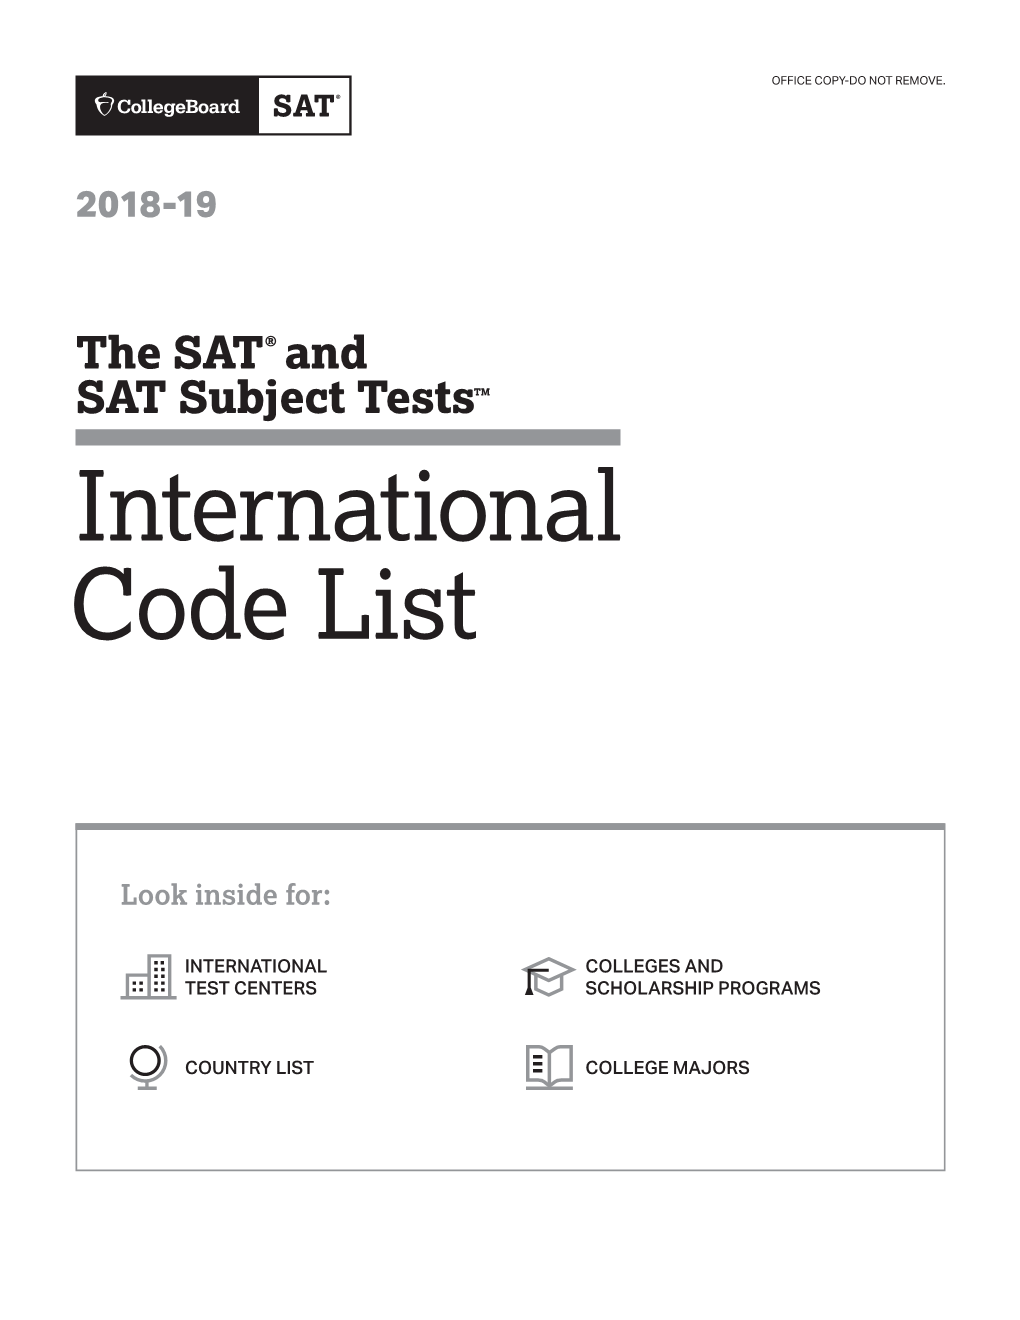 2018-19 SAT International Code List